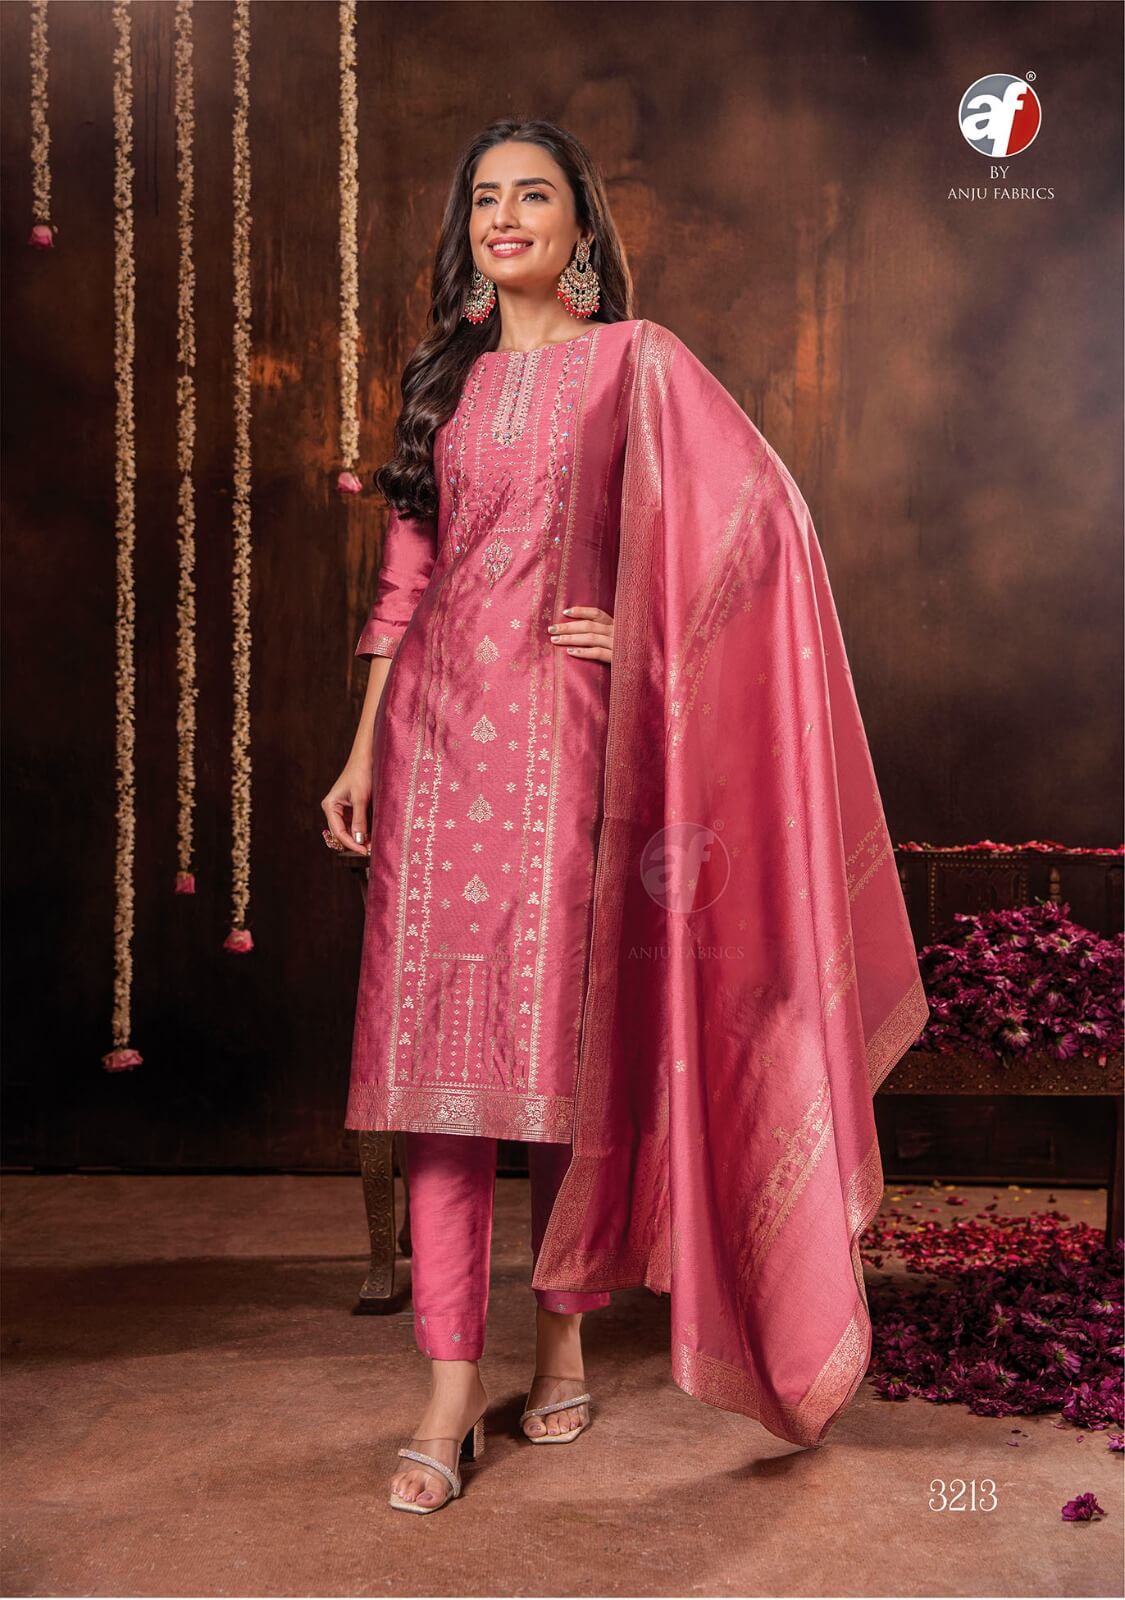 Anju Fabrics Silk Affairs 2 Designer Wedding Party Salwar Suits collection 6